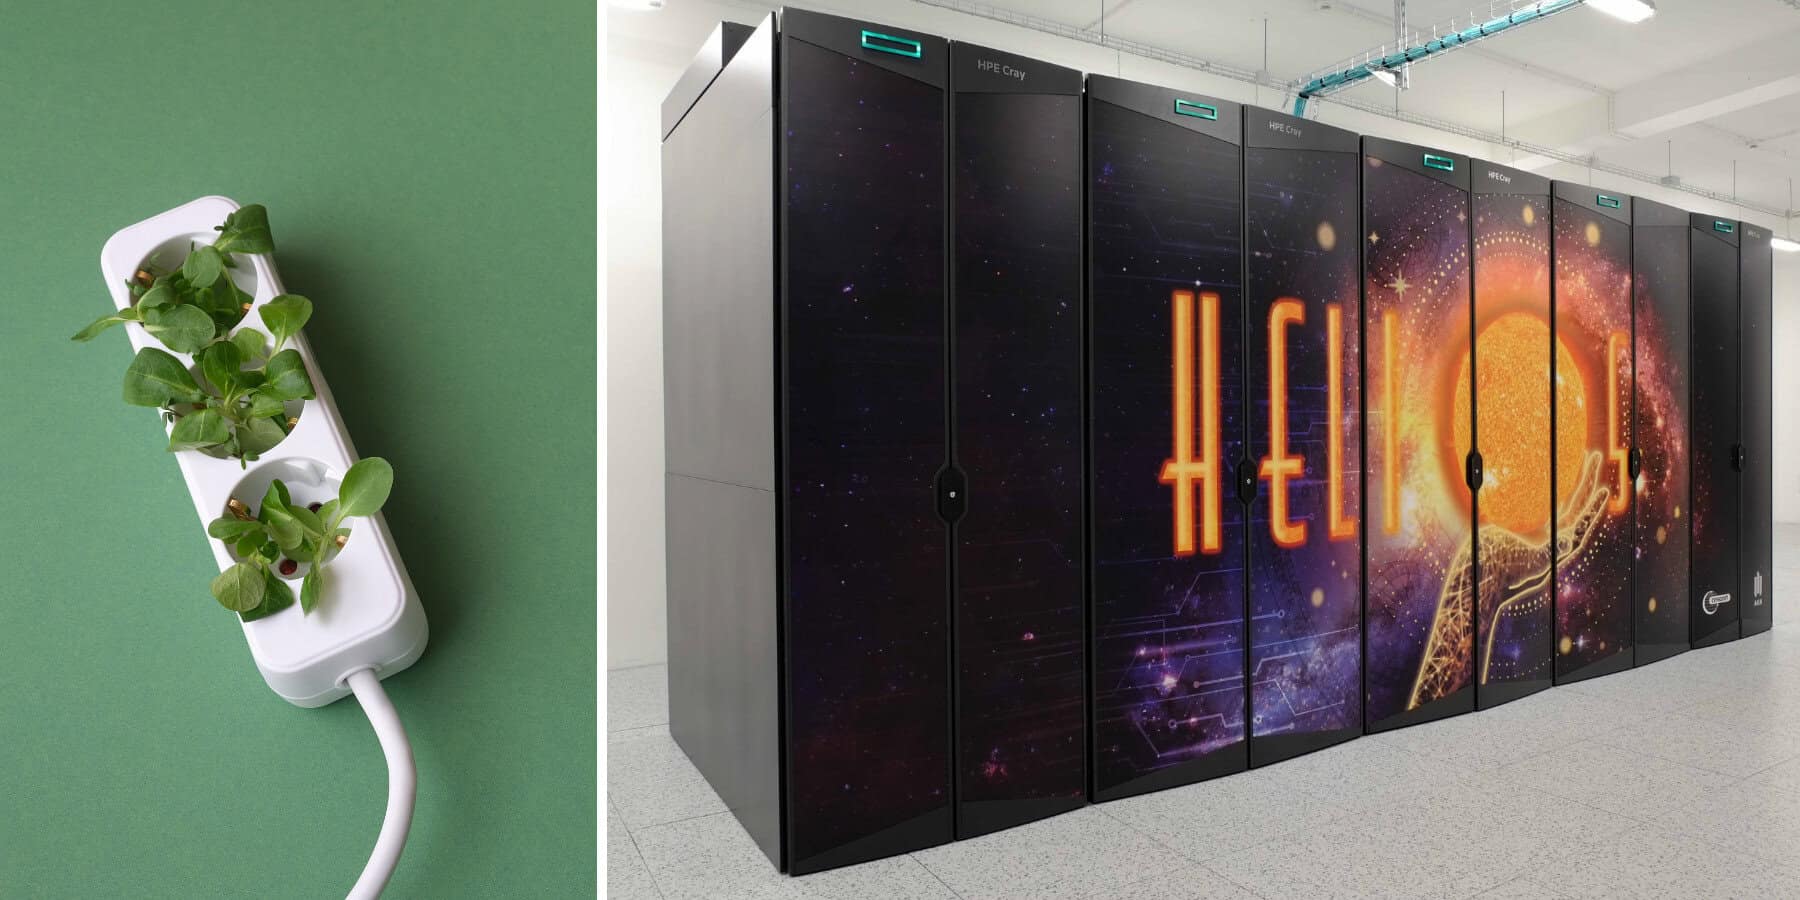 Ekologiczny superkomputer na AGH. Helios otrzymał wyjątkowe wyróżnienie